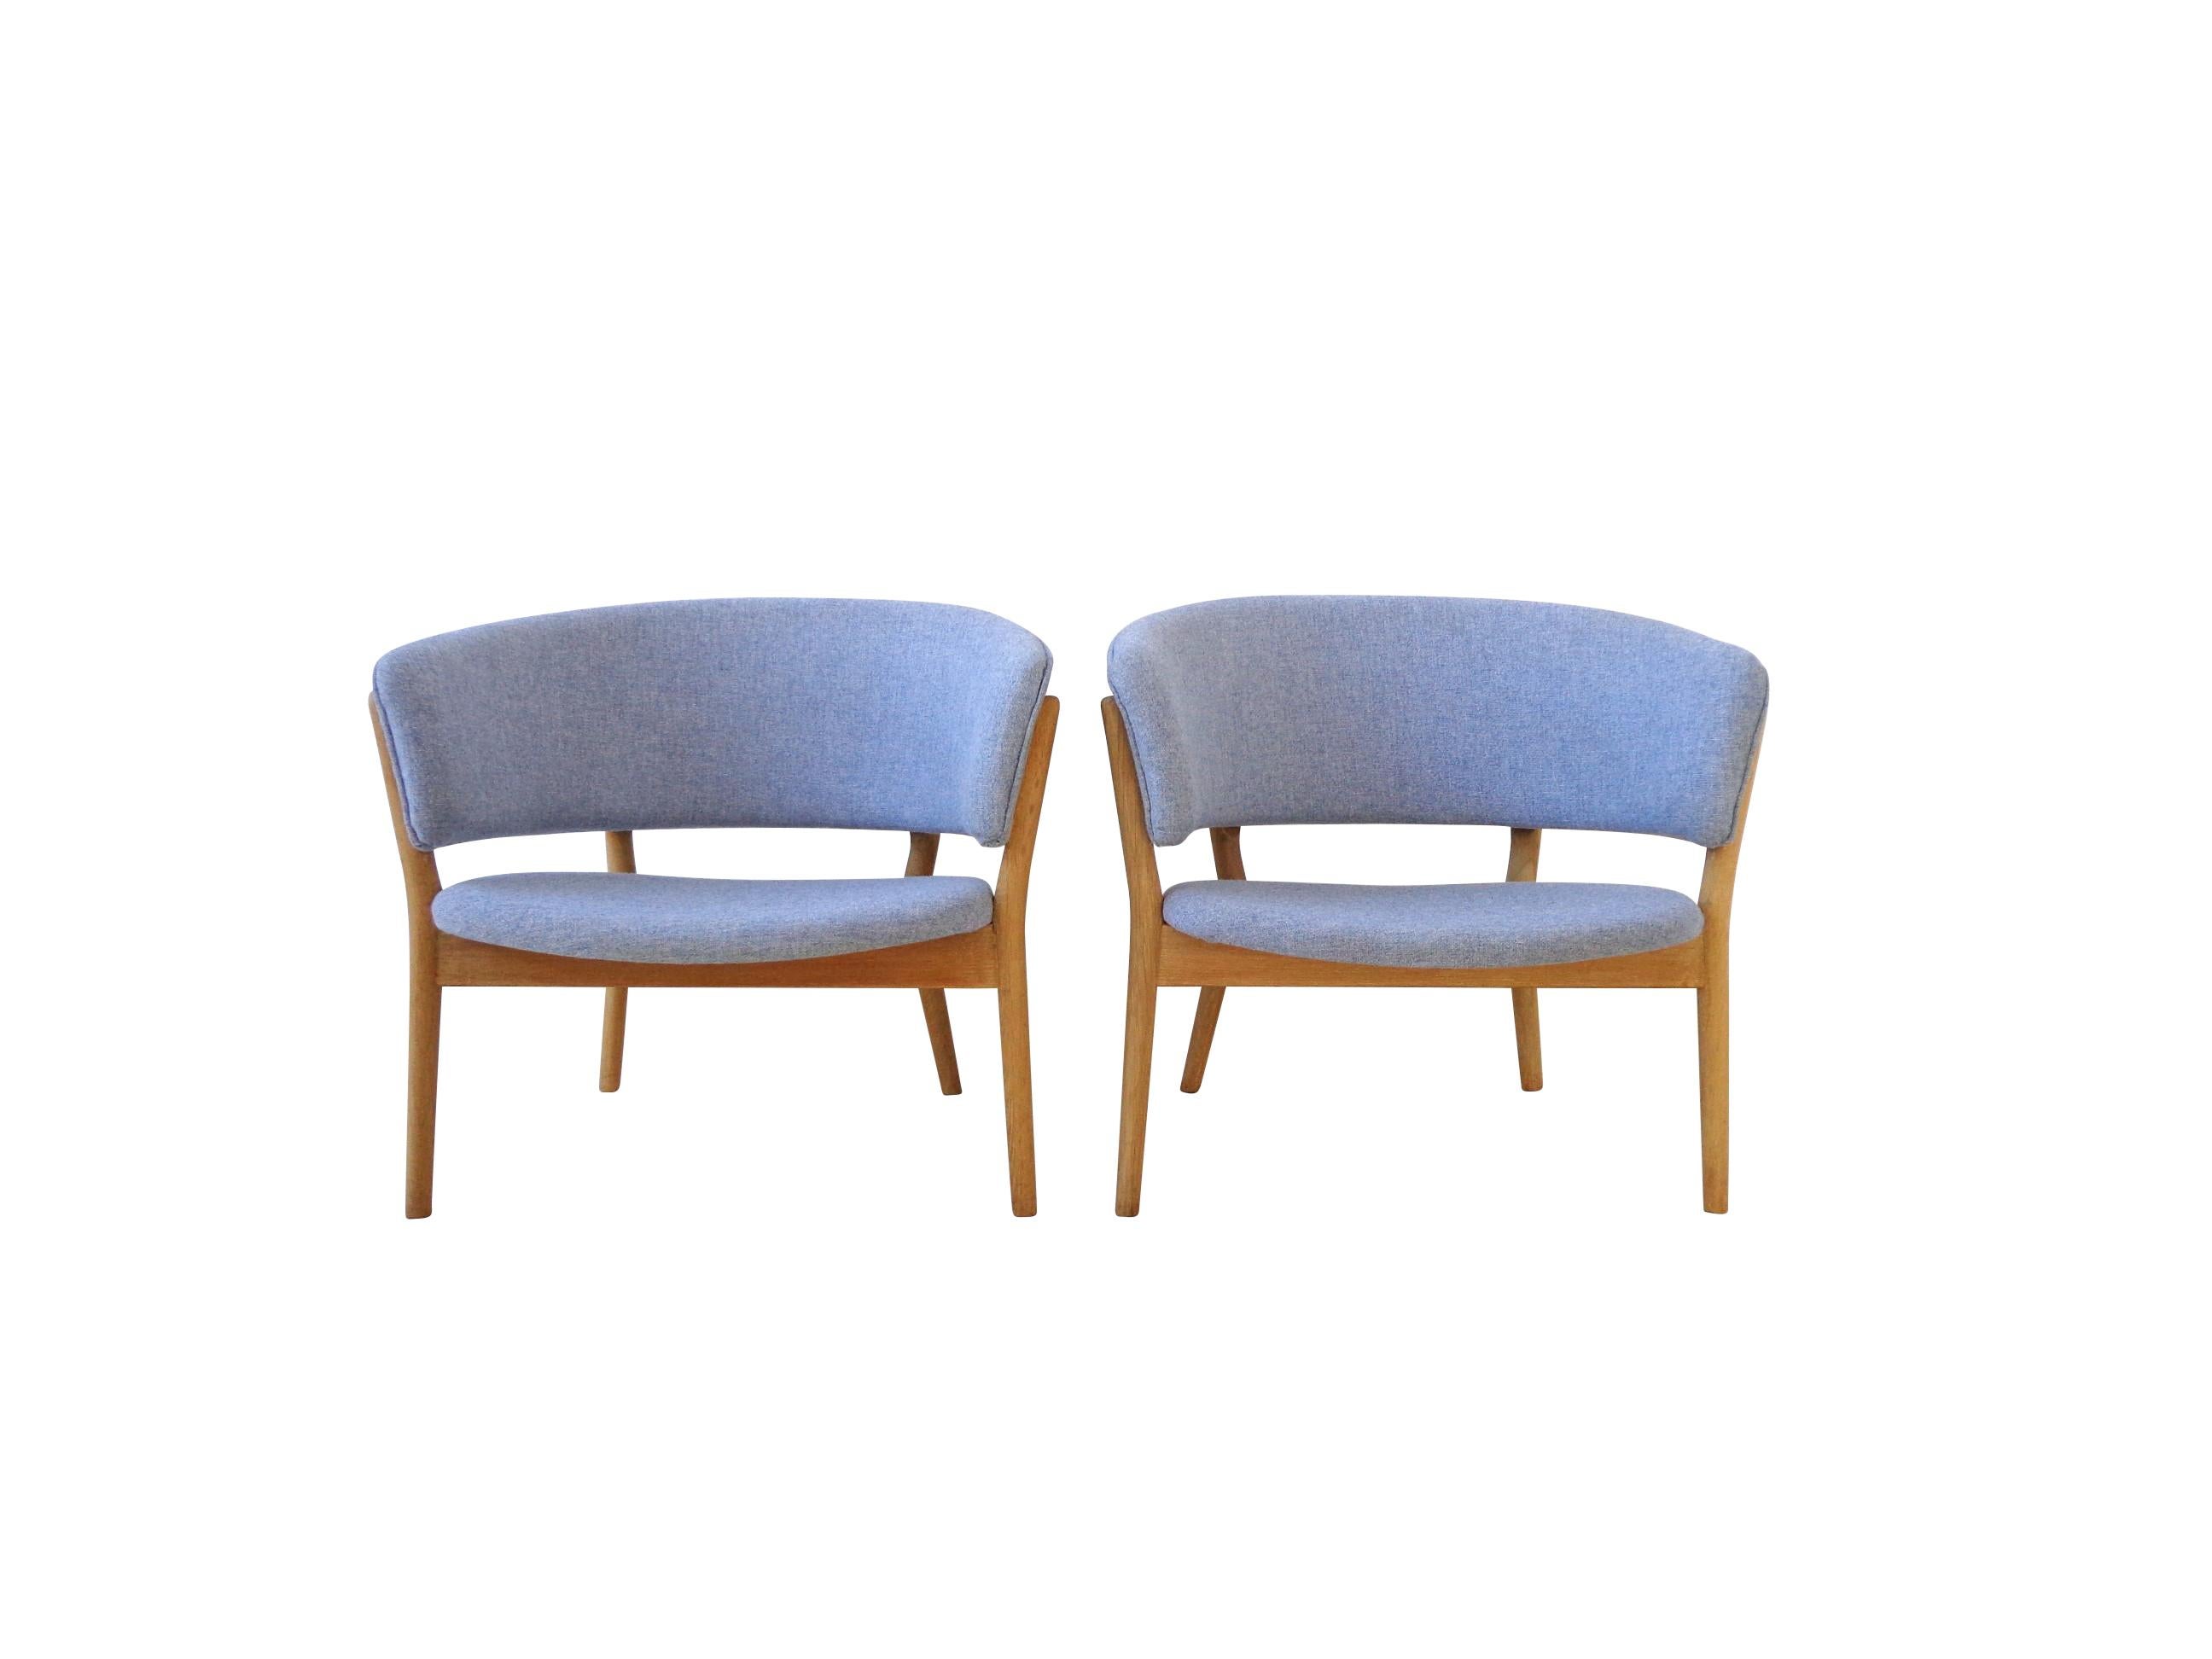 Paire iconique de chaises longues confortables conçues par la designer danoise Nanna Ditzel en collaboration avec Søren Willadsen. Cette paire spectaculaire du modèle ND-83 présente un cadre en bois de chêne massif et un tissu en laine avec des